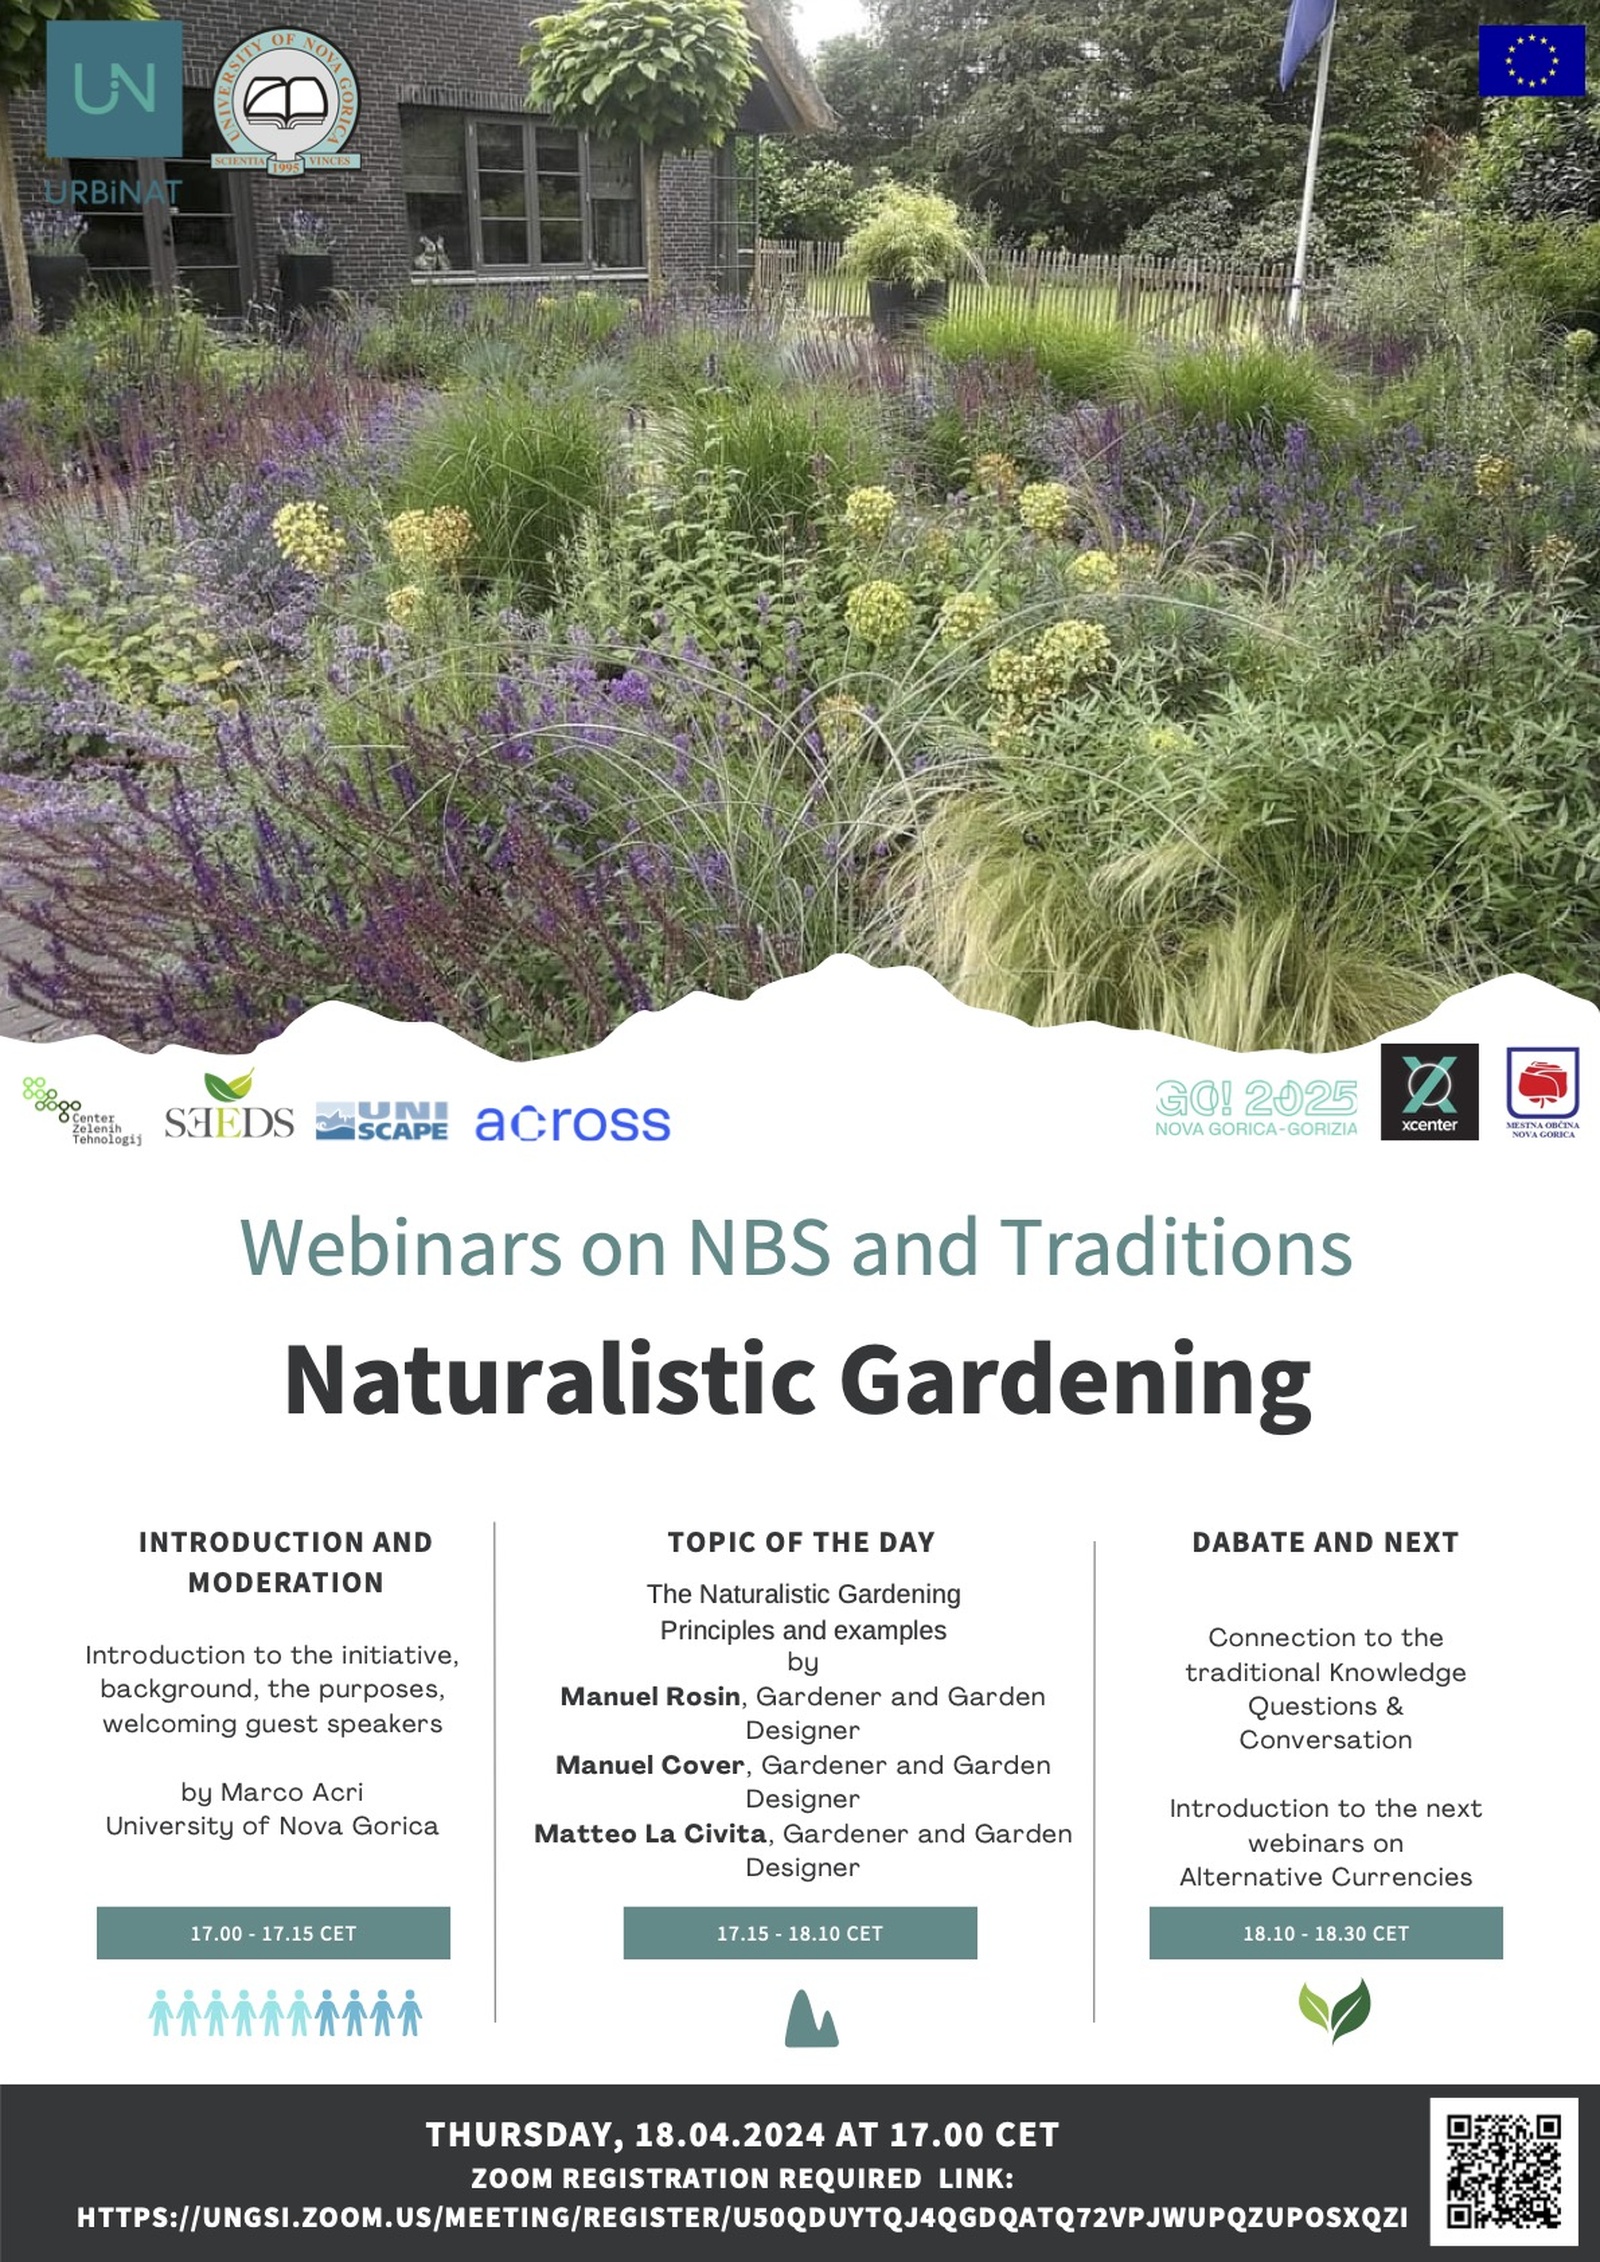 Vabilo na spletni dogodek Naturalistic Gardening